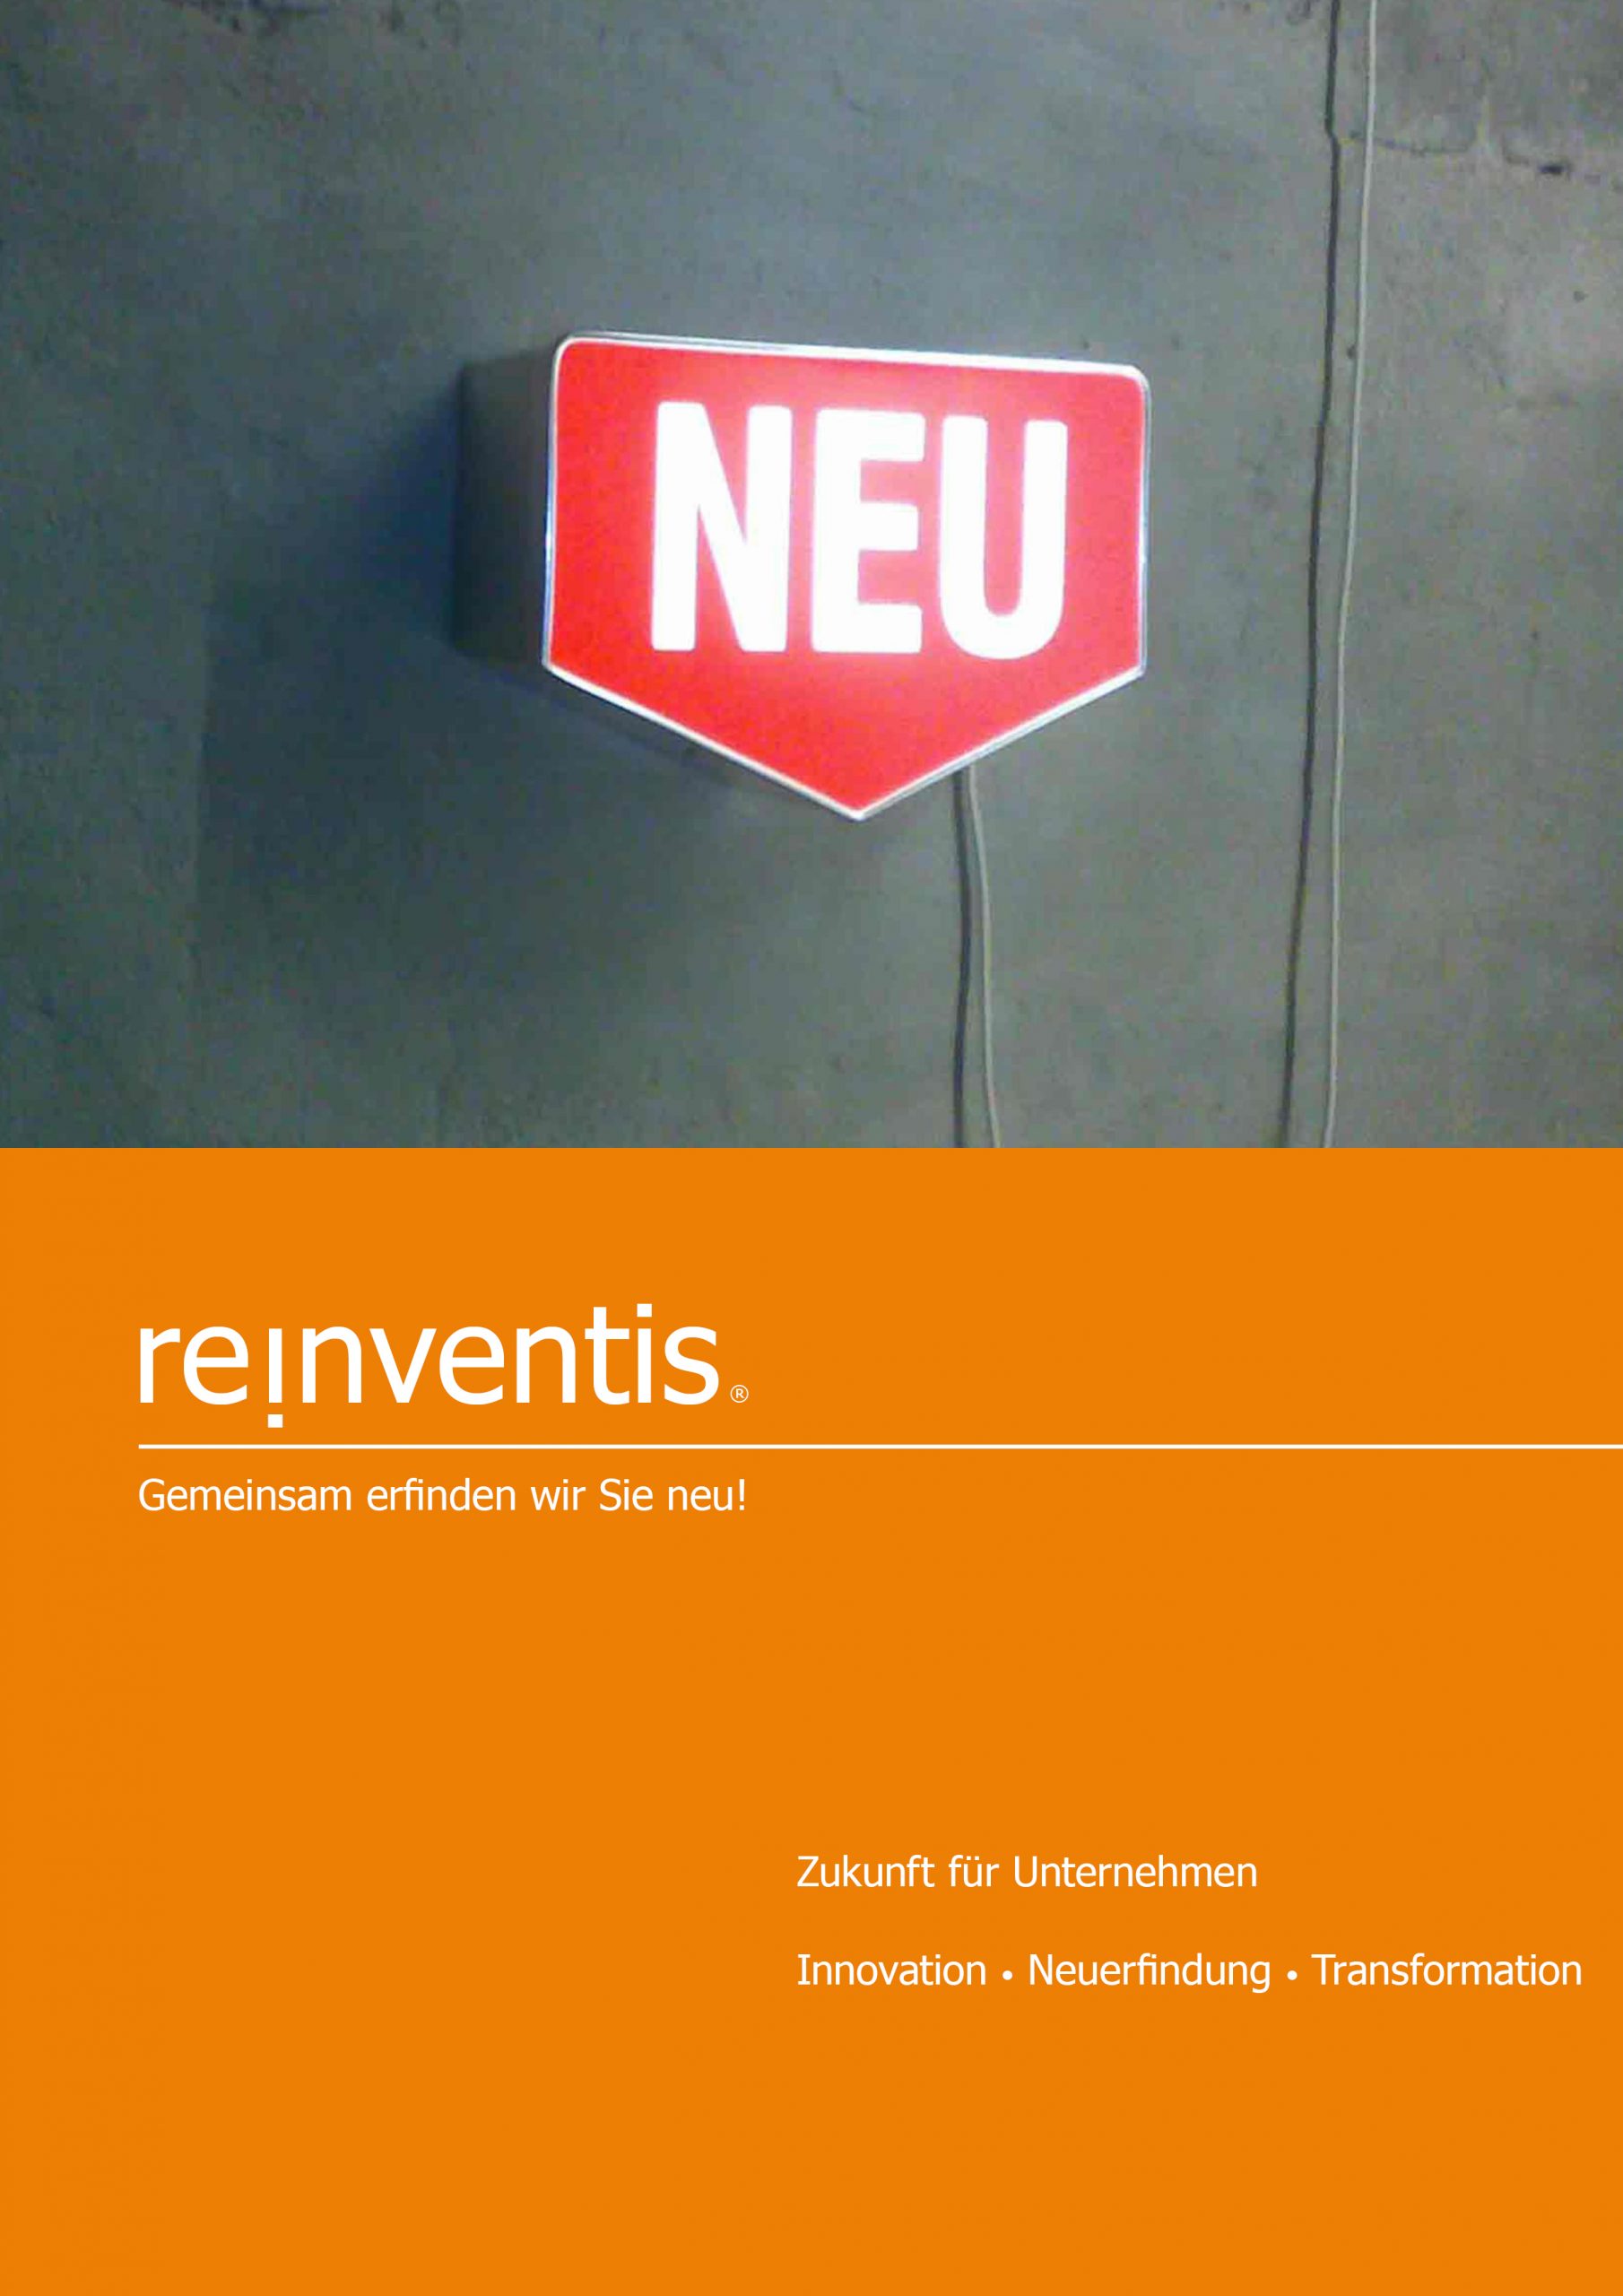 Zukunftsgestaltung für Unternehmen - Innovation, Reinvention und Transformation - REINVENTIS - München - Strategieberatung